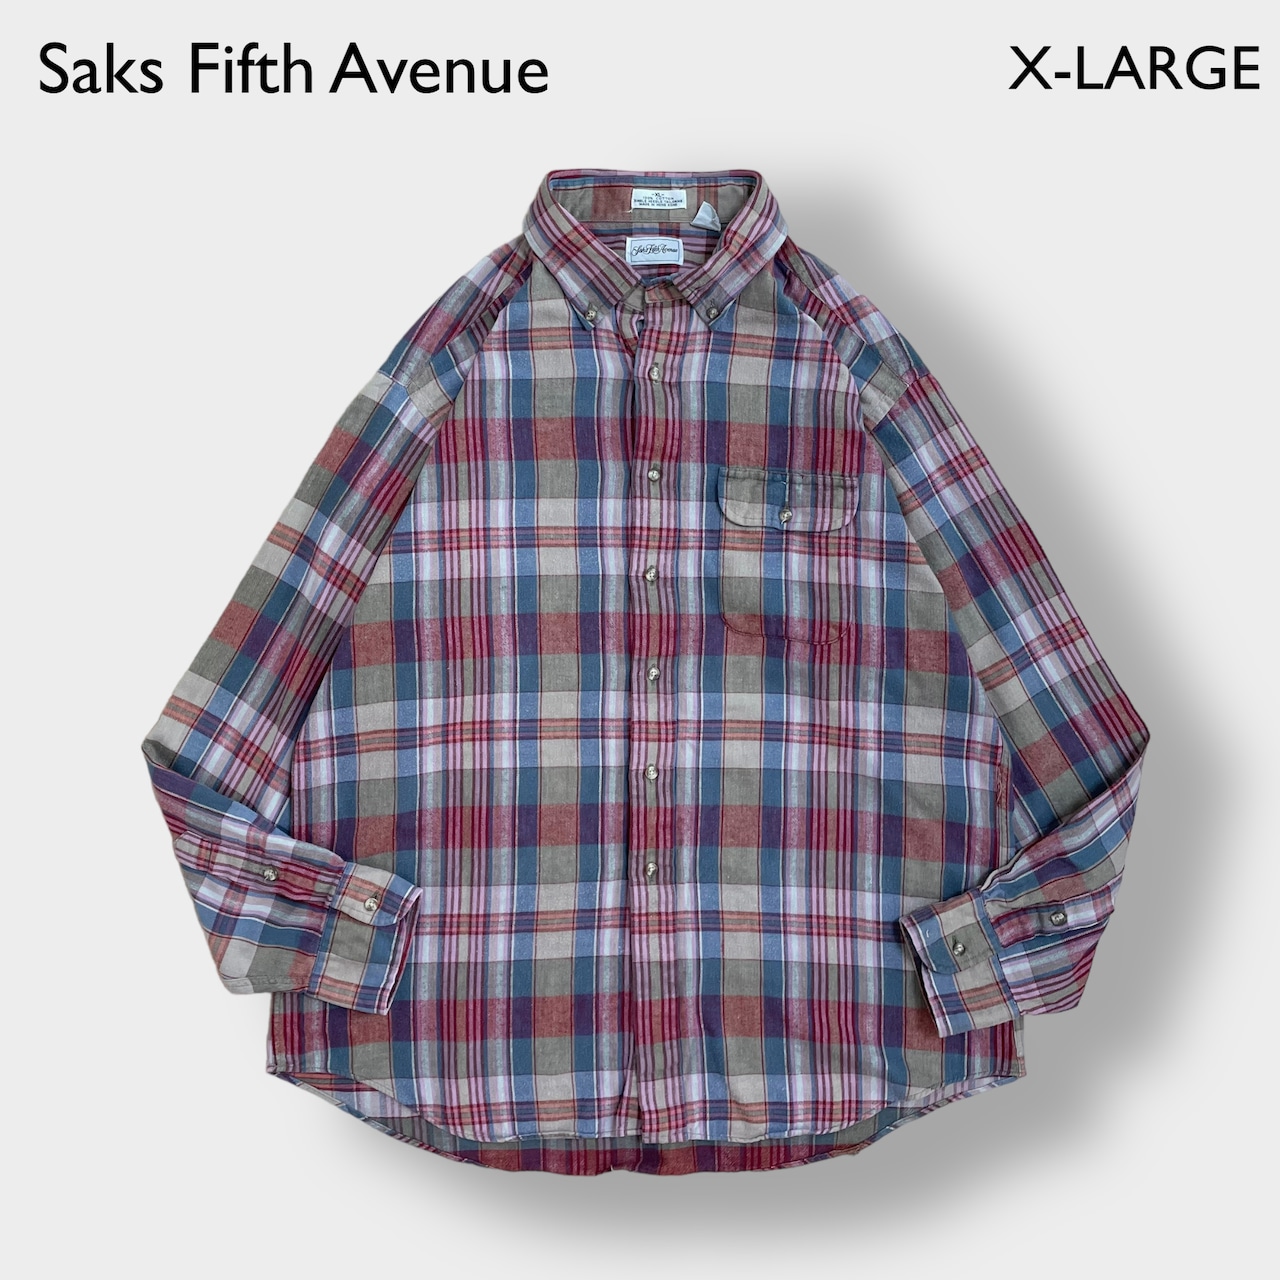 【Saks Fifth Avenue】フランネルシャツ ライトネルシャツ 長袖 チェック柄 カジュアルシャツ マルチカラー XL 香港製 US古着